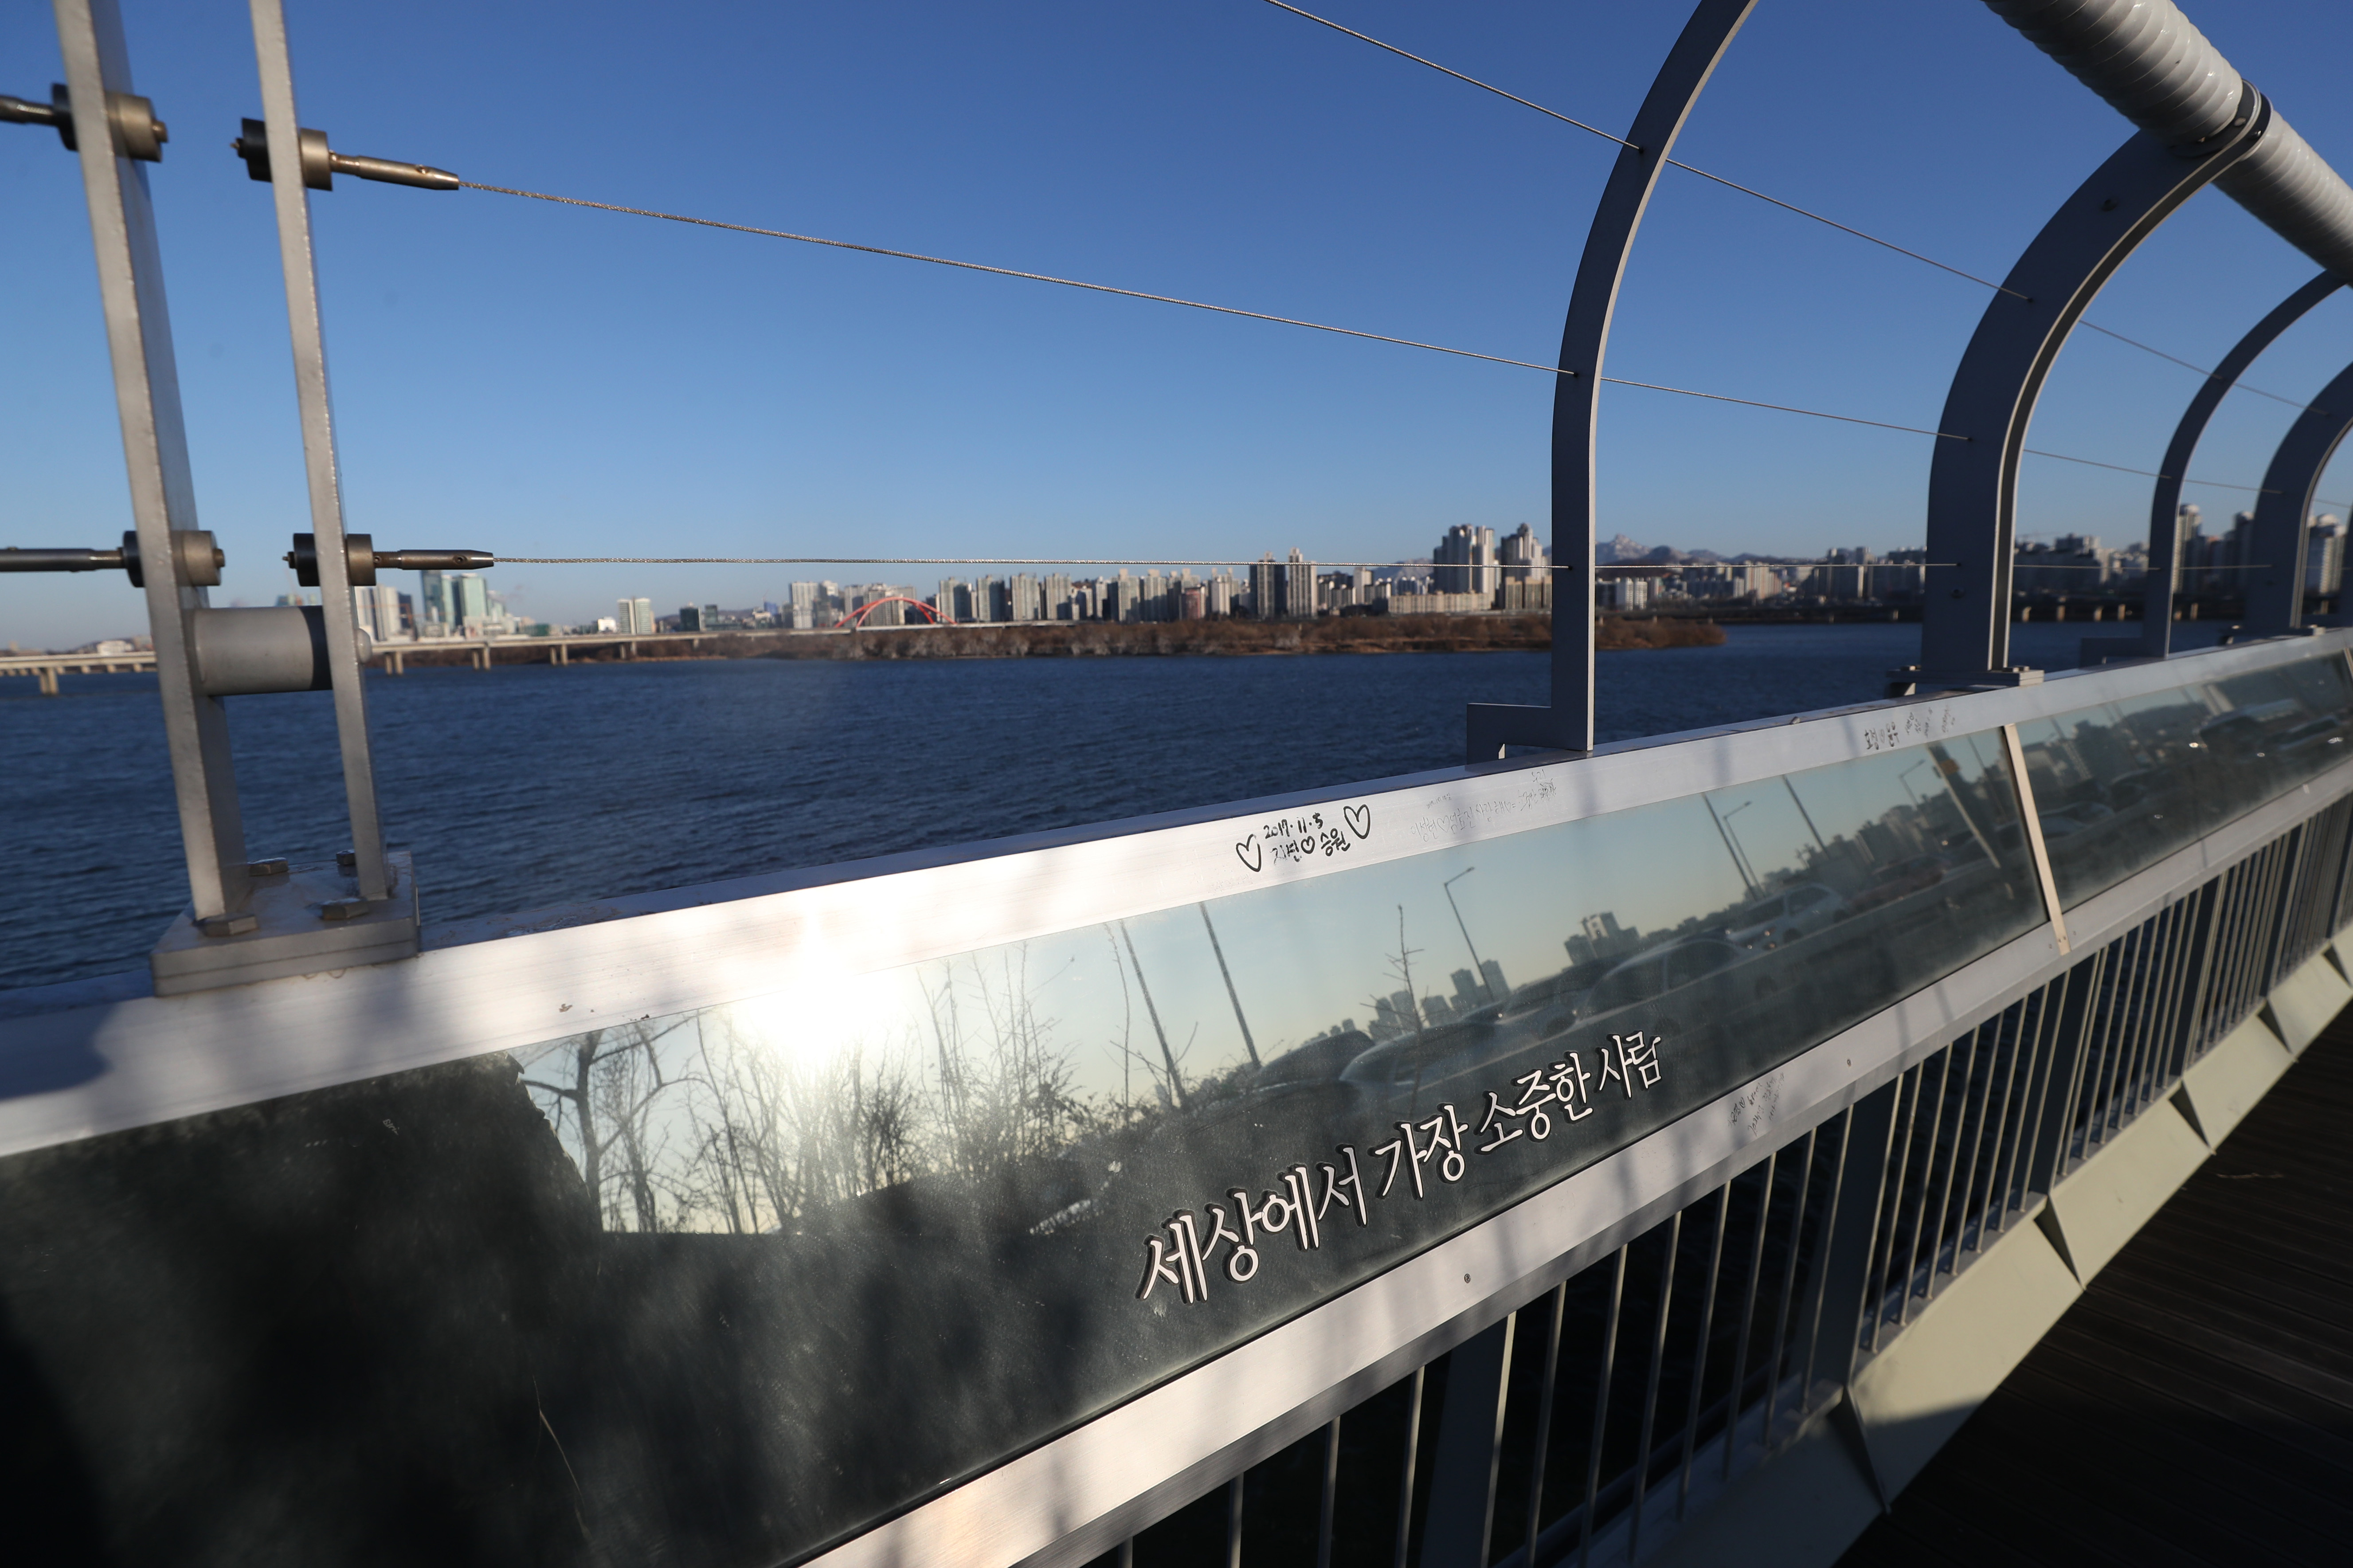  Eine Barriere, die auf der Mapo-Brücke über den Han-Fluss in Seoul installiert wurde, die ein bekannter Ort für Selbstmord ist. Eine koreanische Botschaft mit der Aufschrift "Du bist der wertvollste Mensch der Welt" ist auf der Barriere zu sehen, die den Selbstmord erschweren soll. 